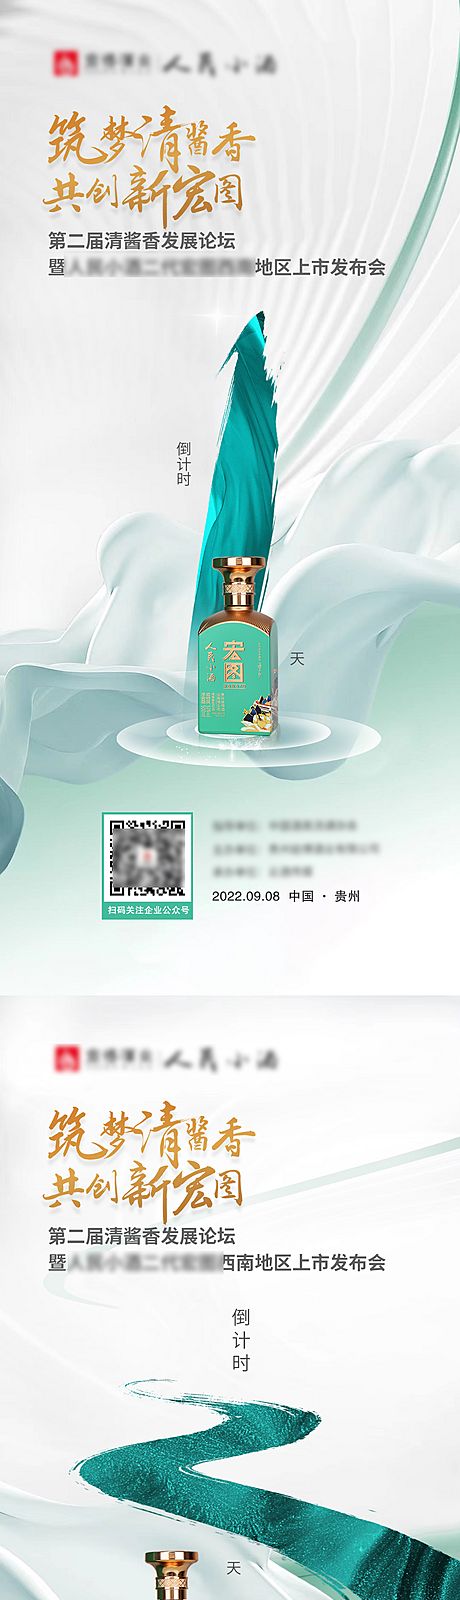 仙图网-中国风山水酒类发布会倒计时海报